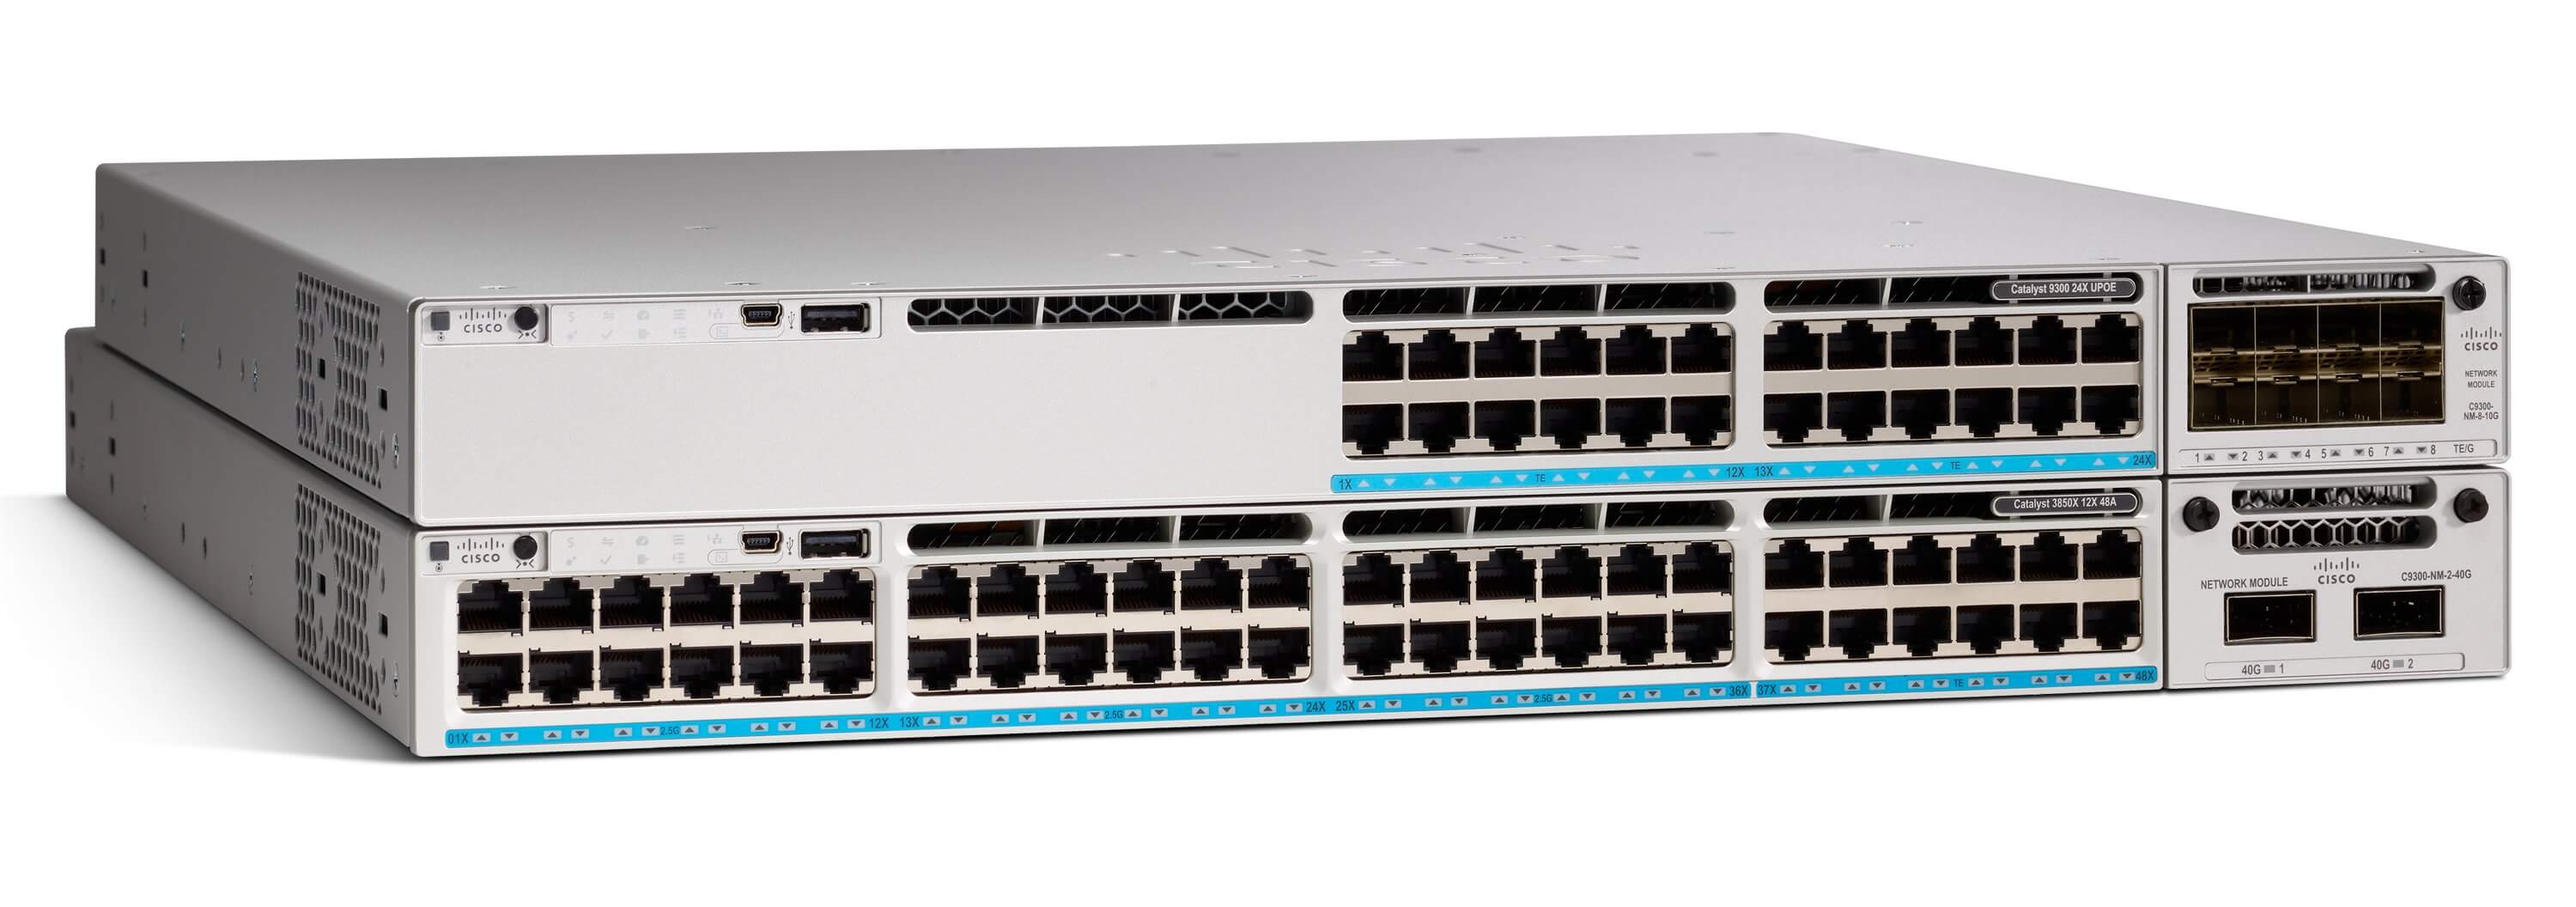 Cisco Catalyst 9300 Series Switches - Cisco